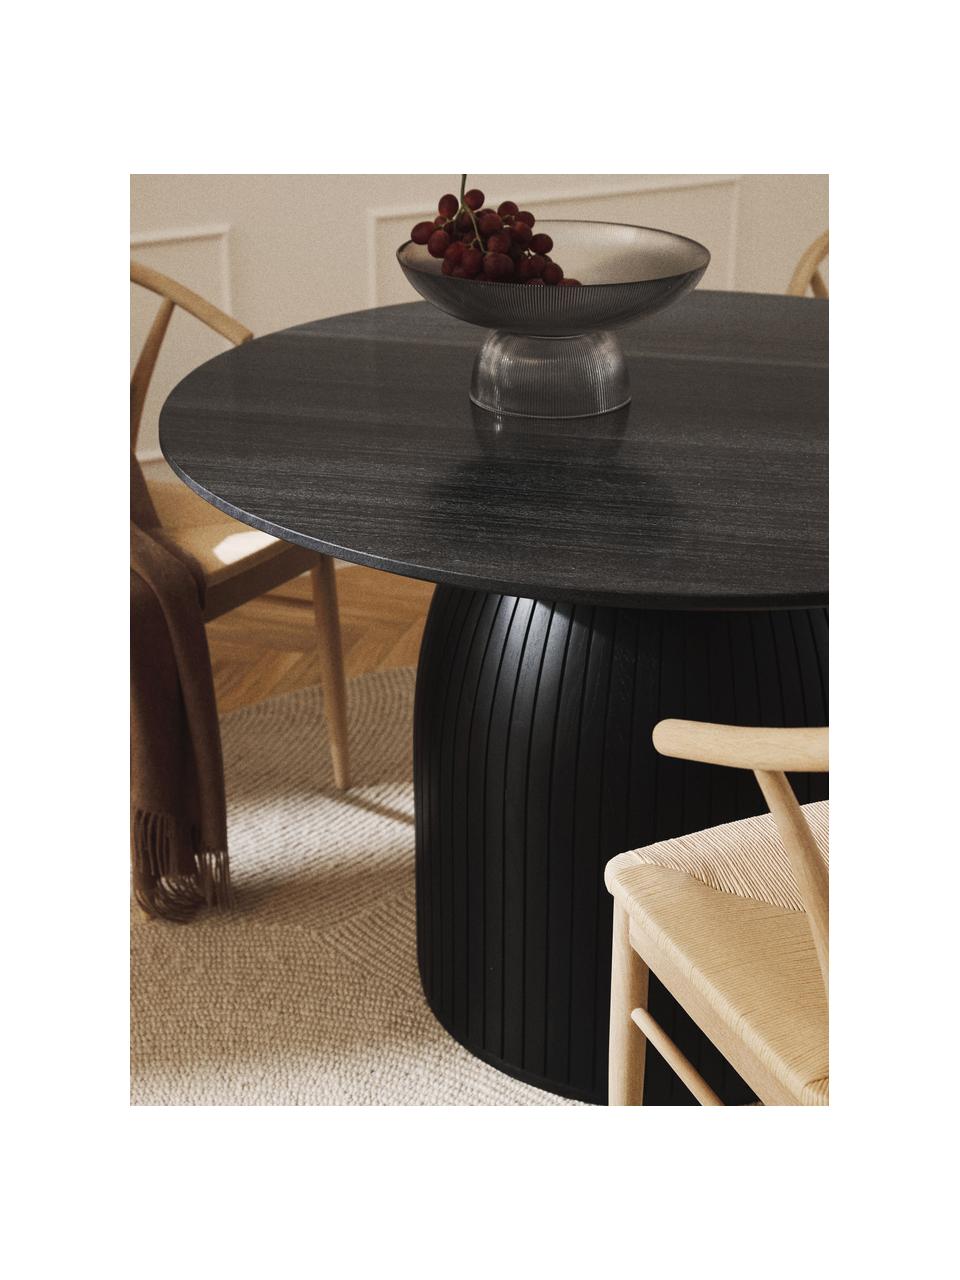 Kulatý jídelní stůl s mramorovou deskou Nelly, Černá, mramorovaná, Ø 115 cm